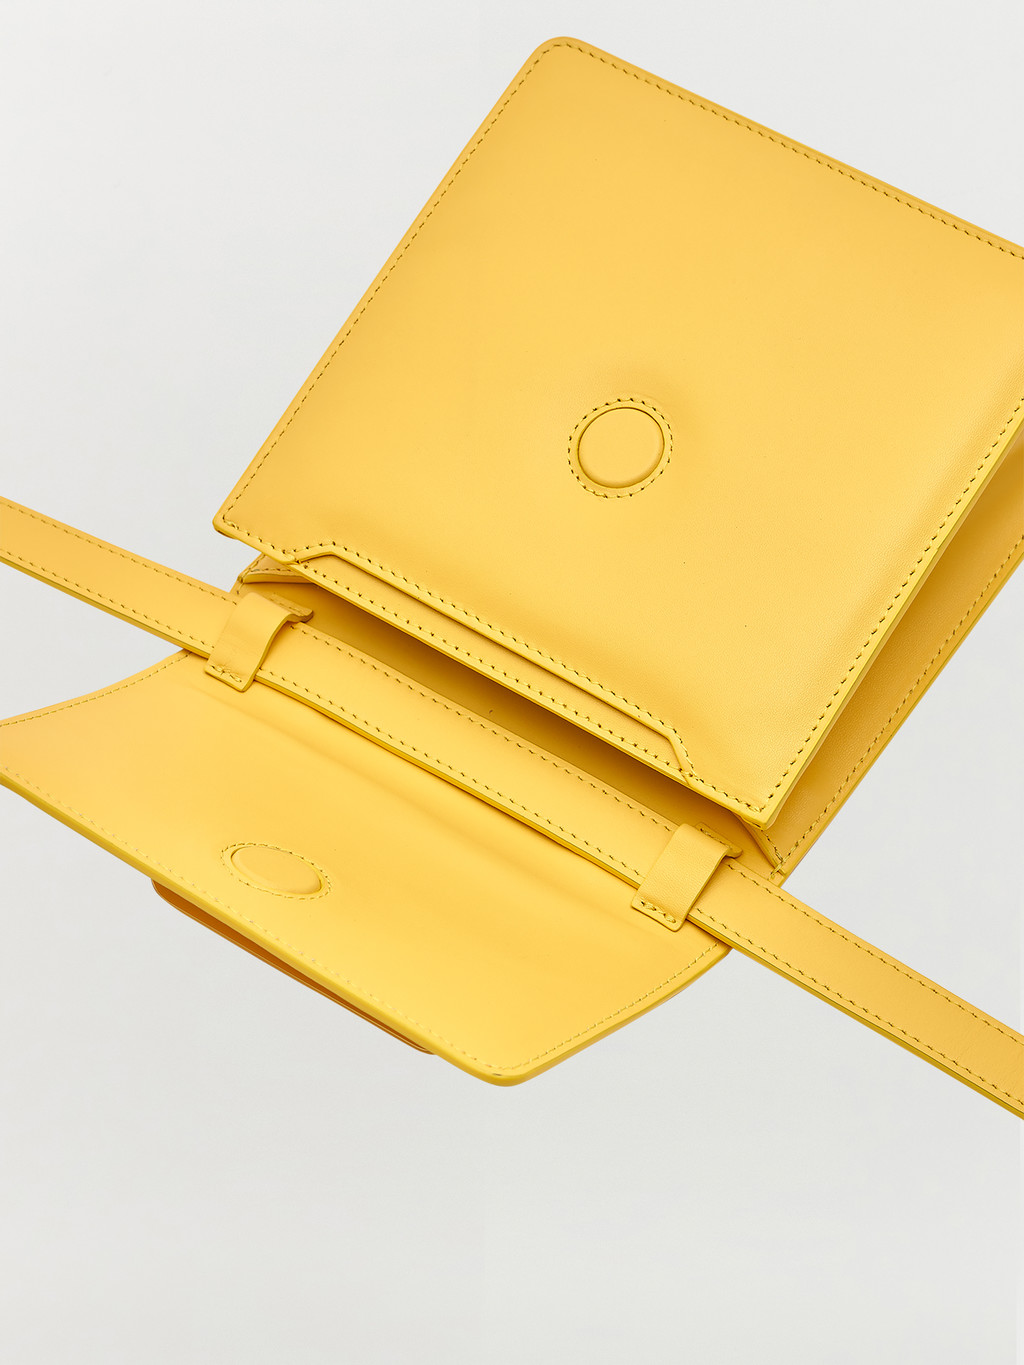 HANDEE Bag - Yellow : EENK SHOP